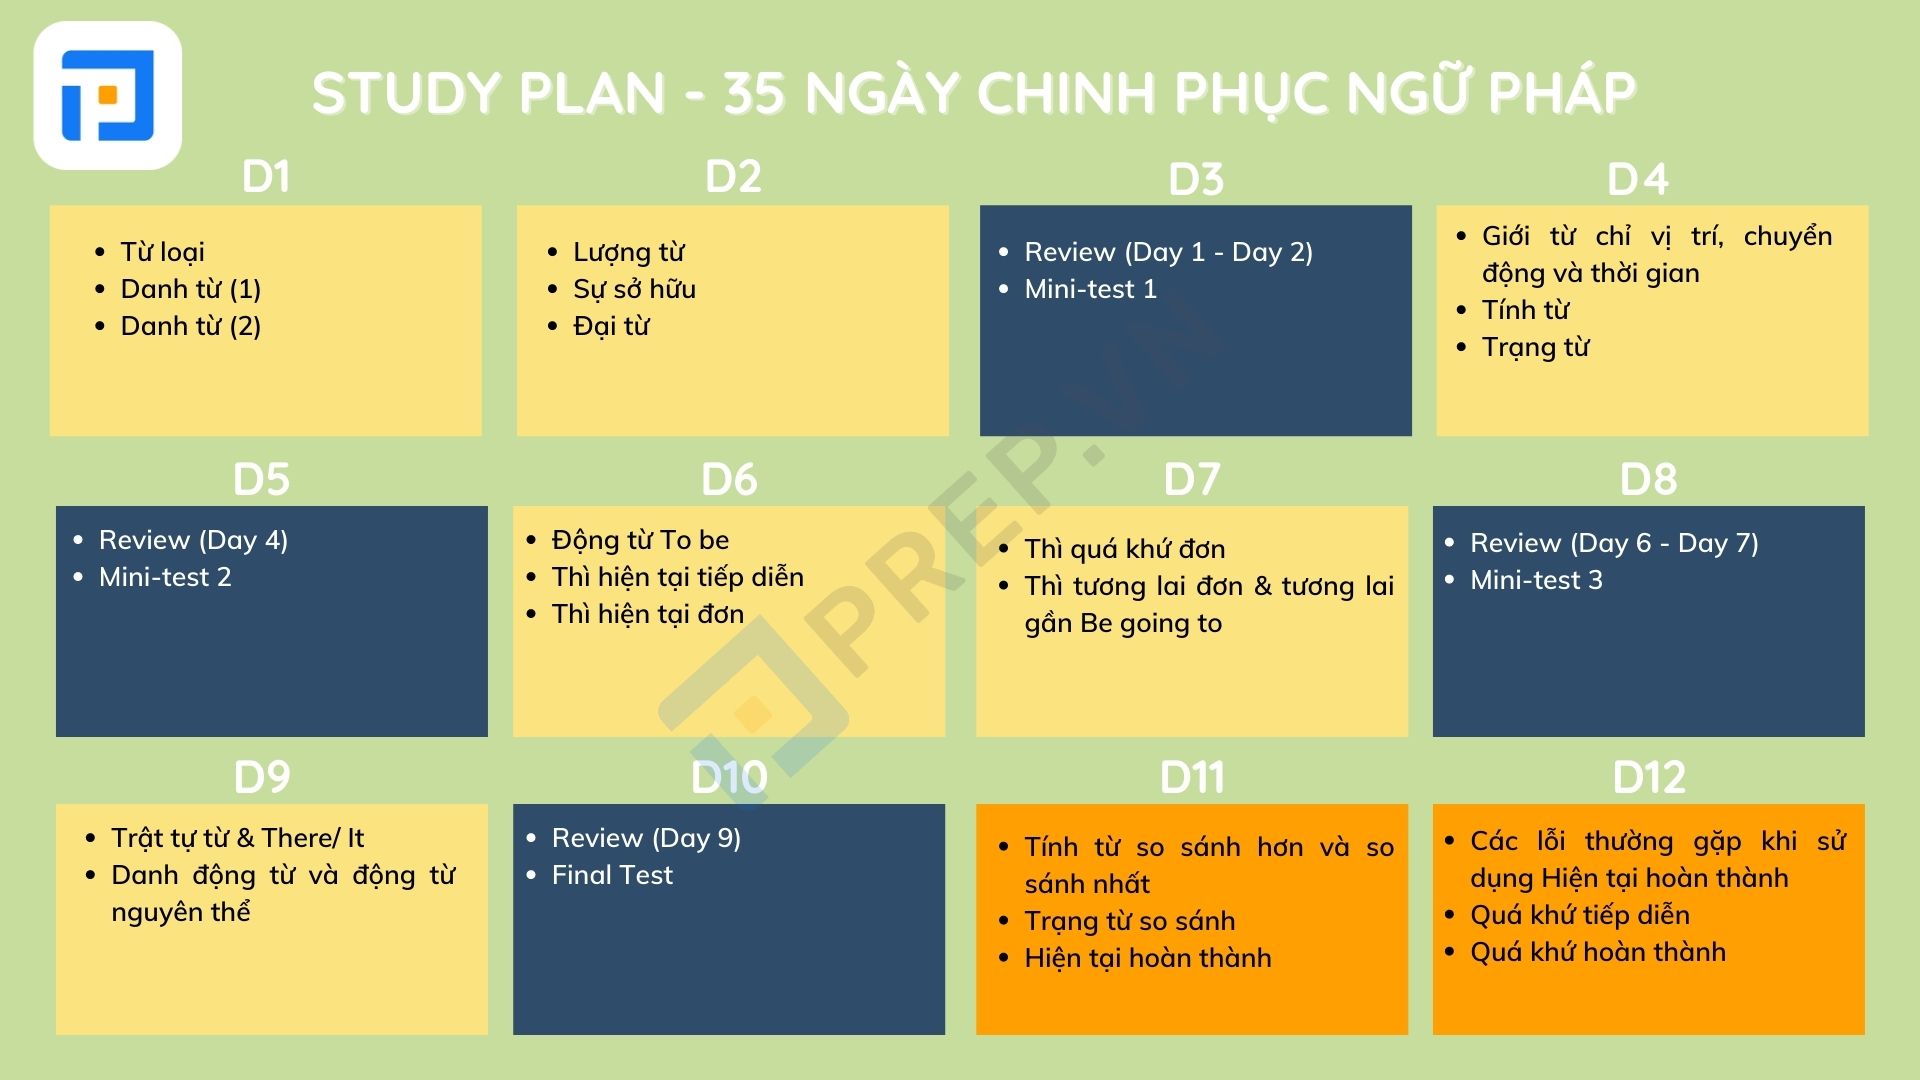 Study Plan - Lộ trình học ngữ pháp tiếng Anh trong vòng 35 ngày